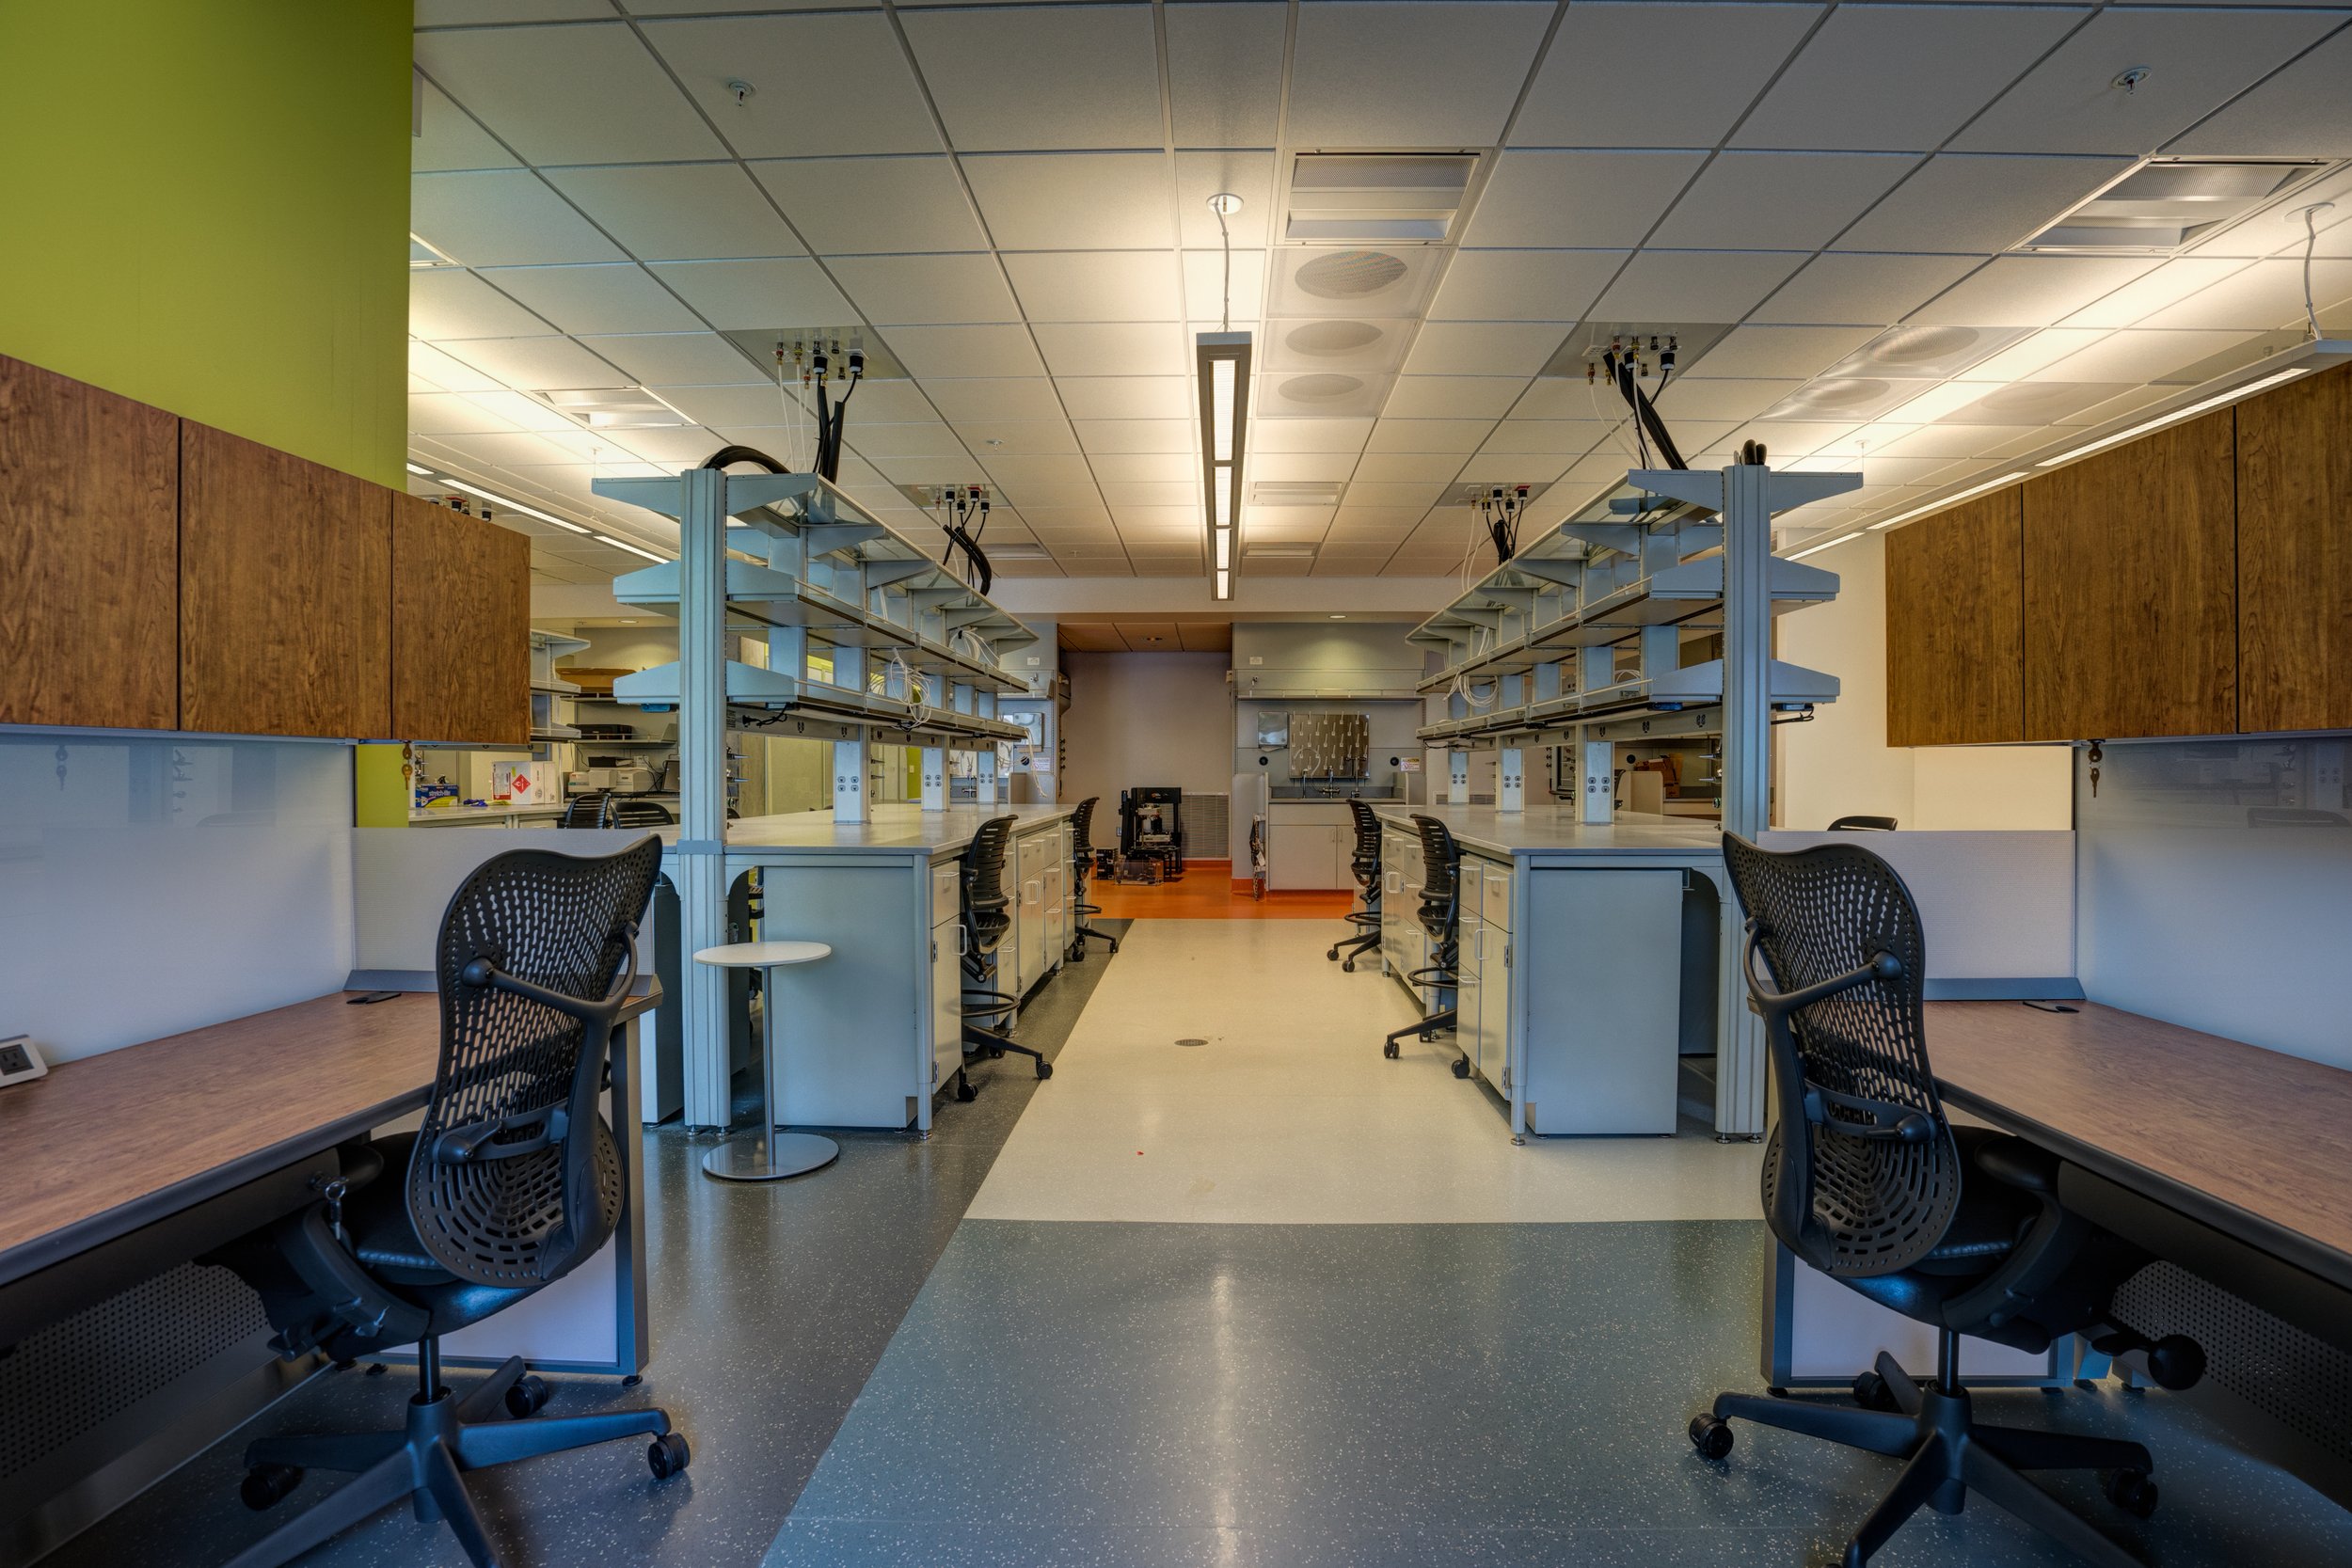 uu-skaggs-research-building-wet-lab-bioscience-medical-vivarium-electrical-engineering.jpg